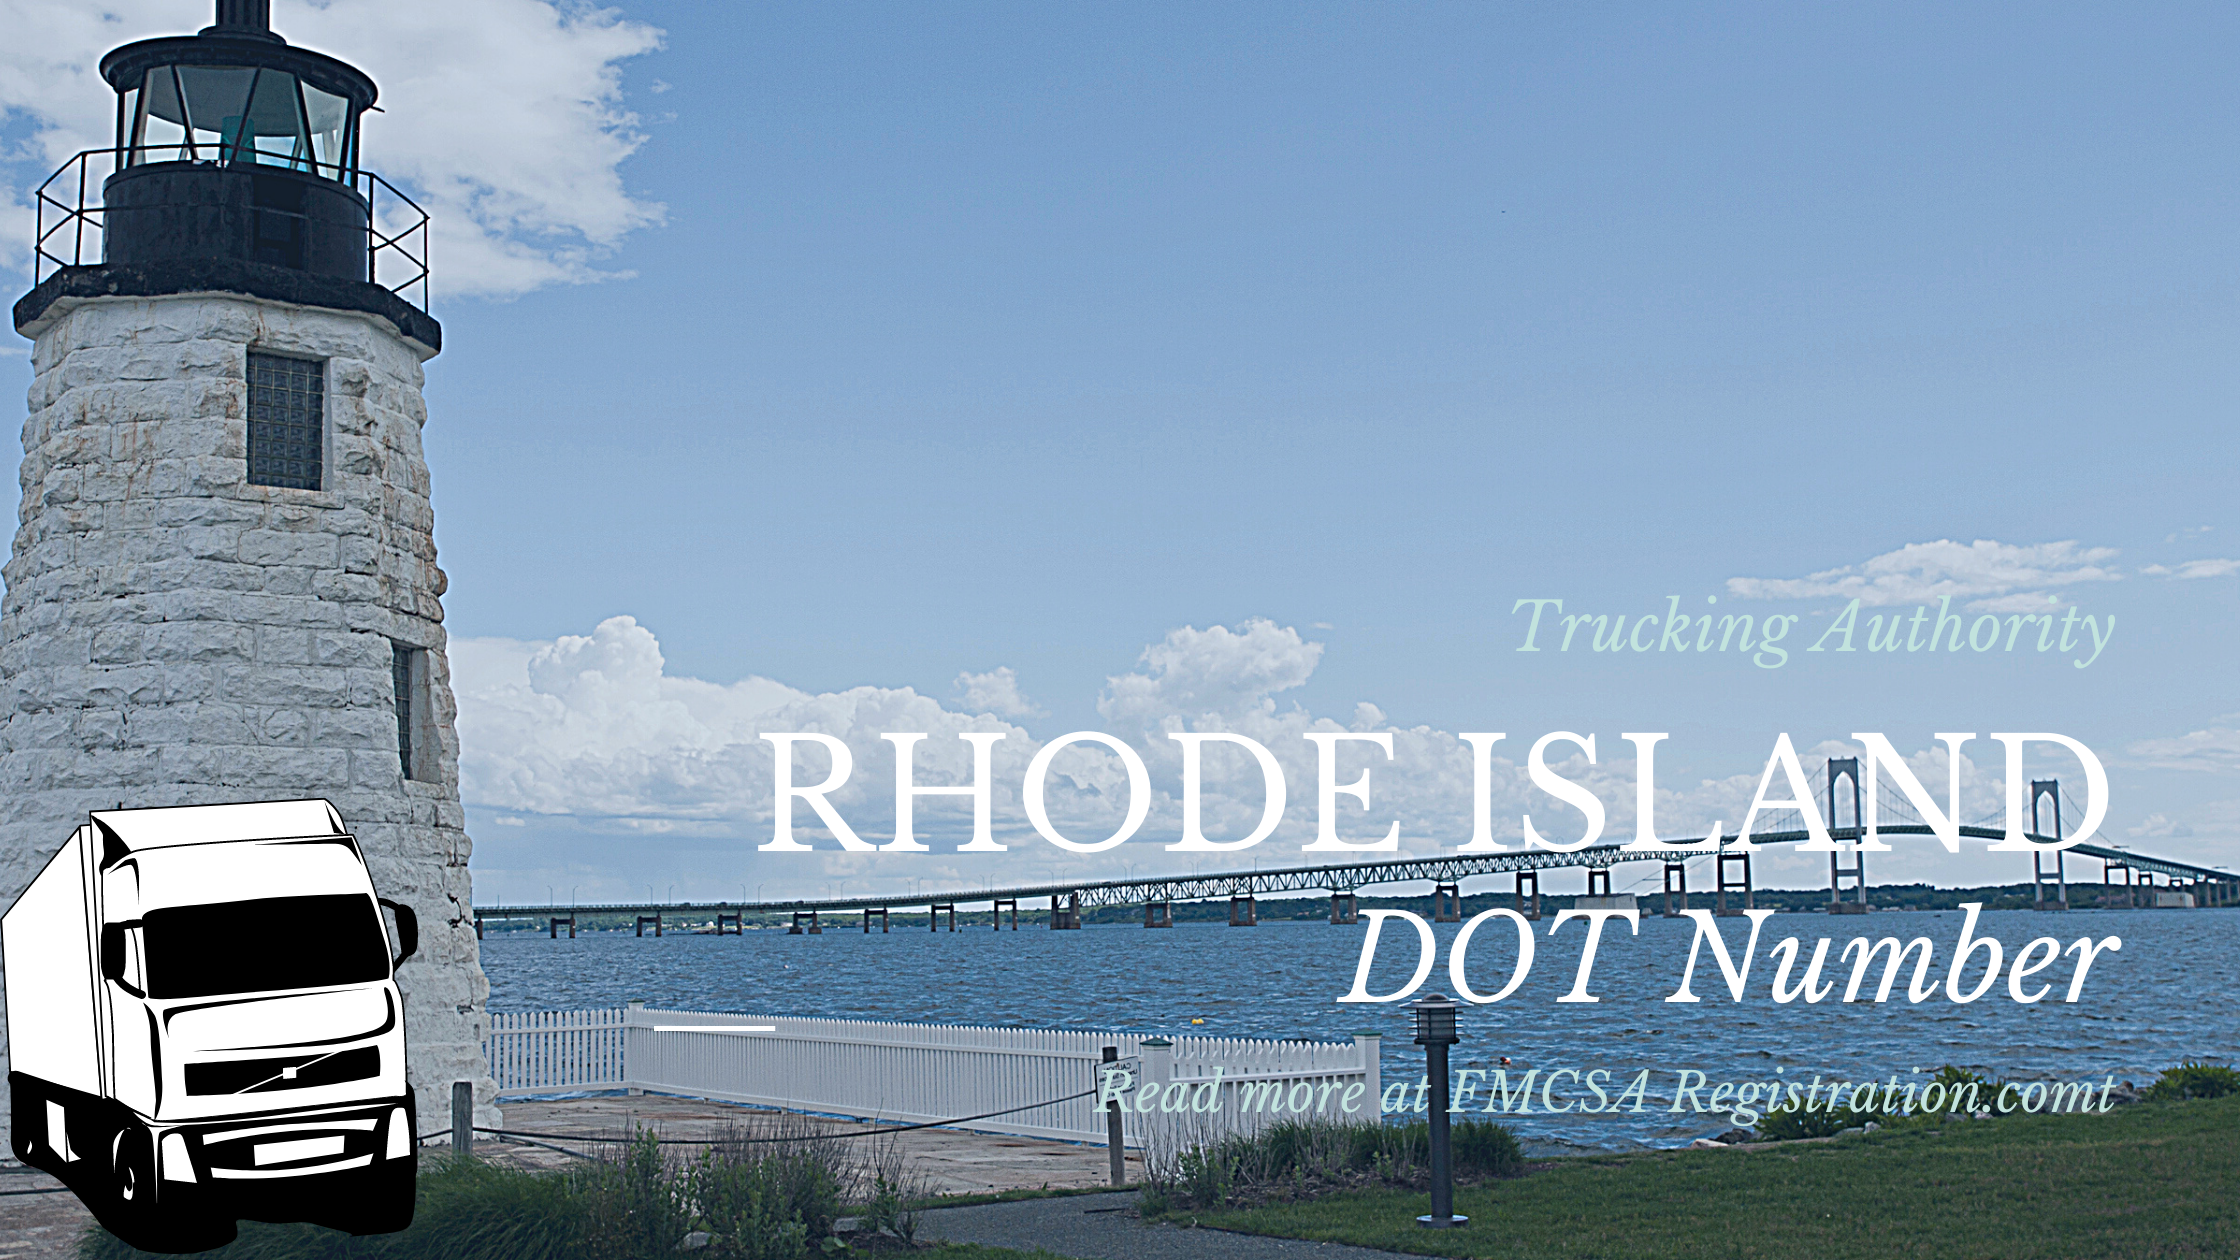 Rhode Island DOT Number